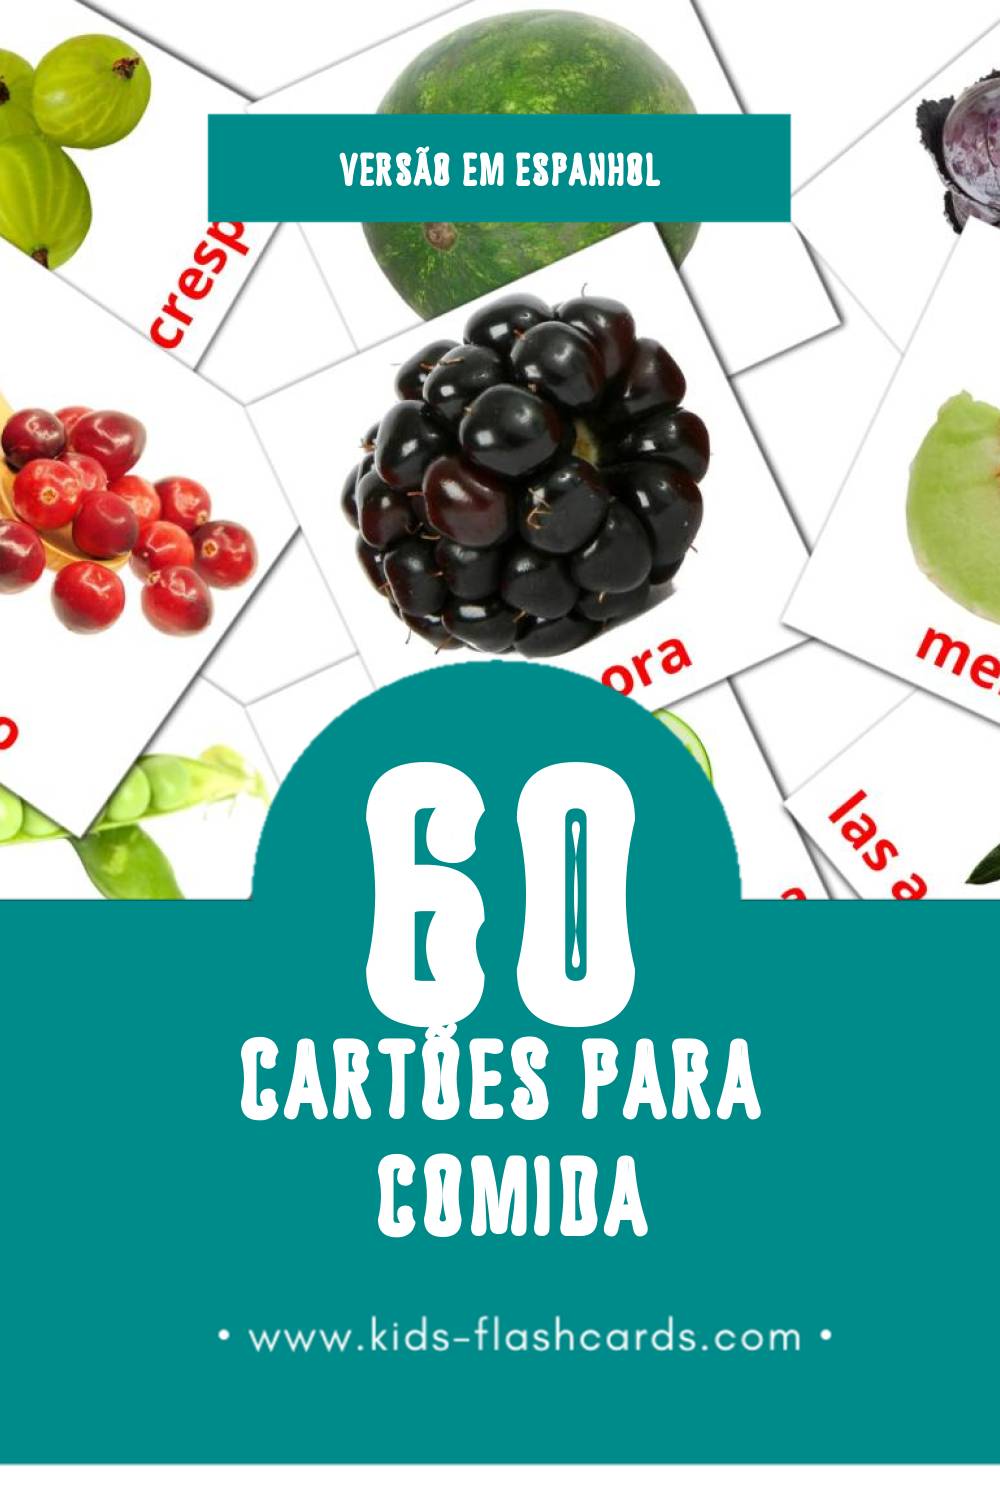 Flashcards de Alimentos Visuais para Toddlers (60 cartões em Espanhol)